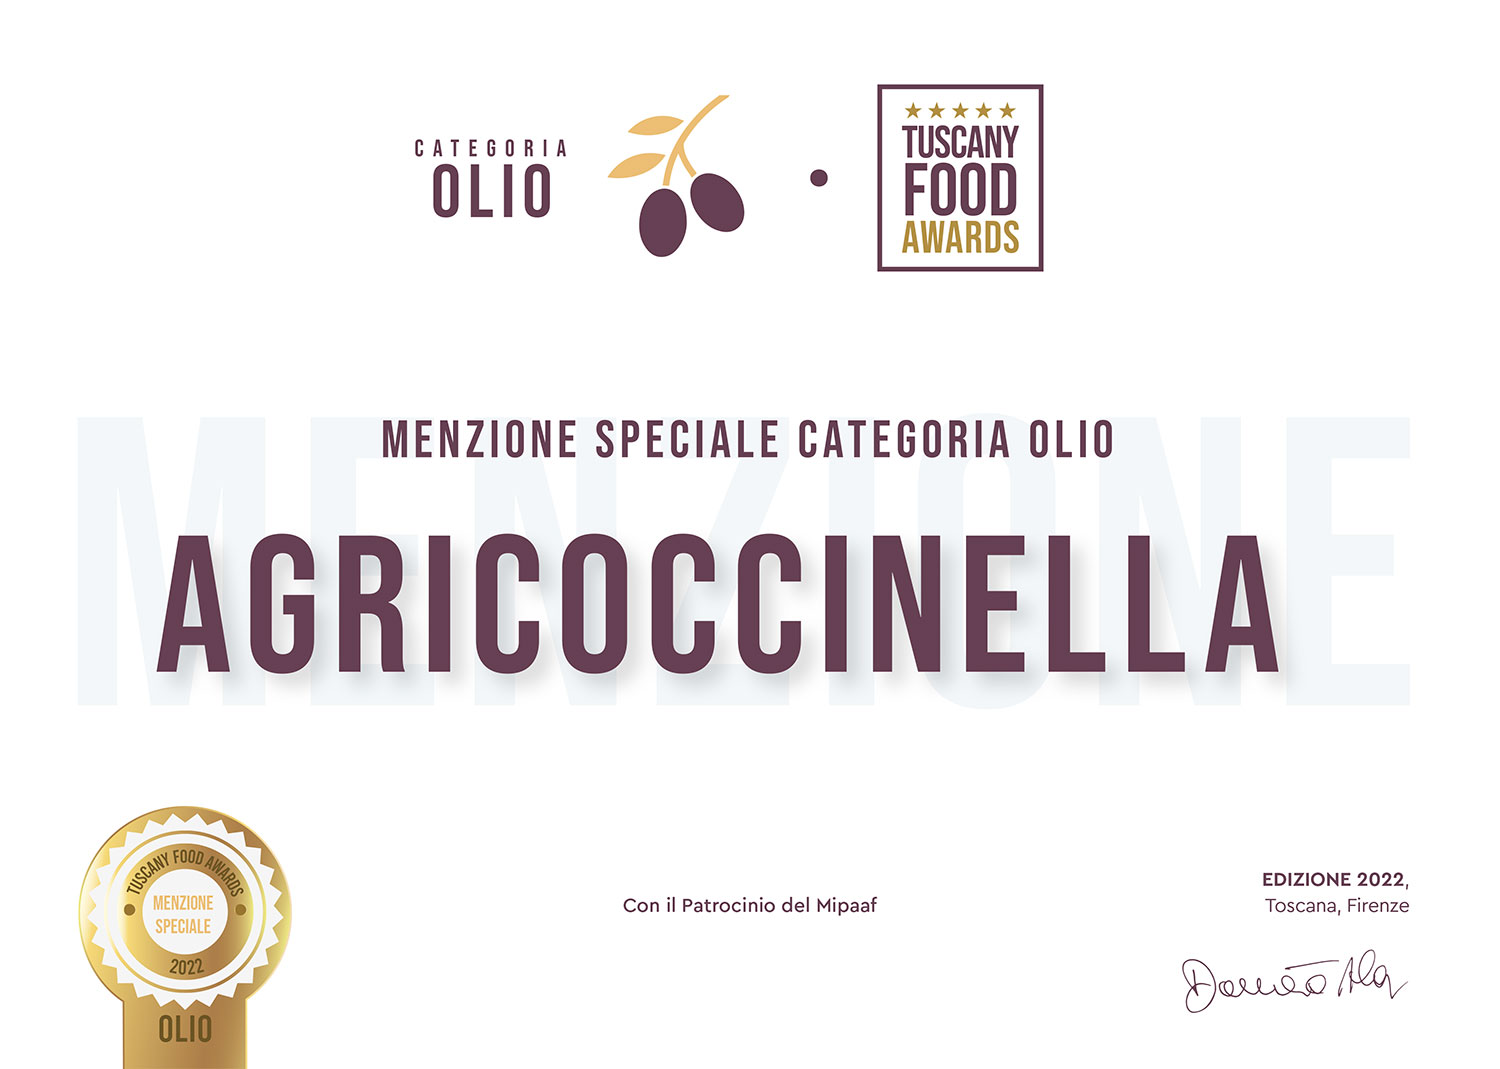 Agricoccinella